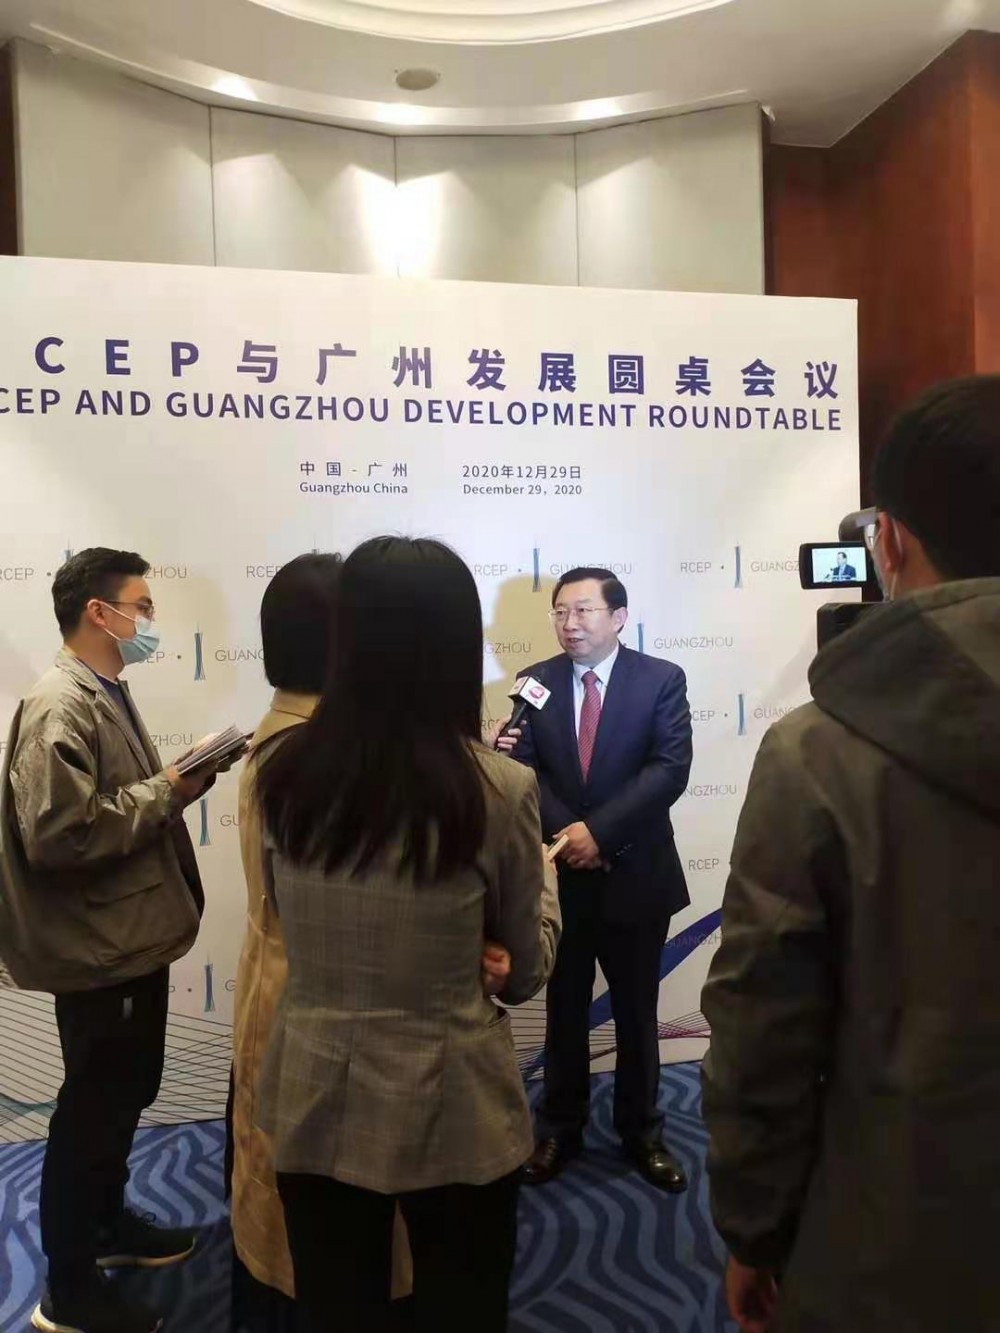 徐宁宁在"RCEP暨广州发展圆桌会议"上作了主旨演讲